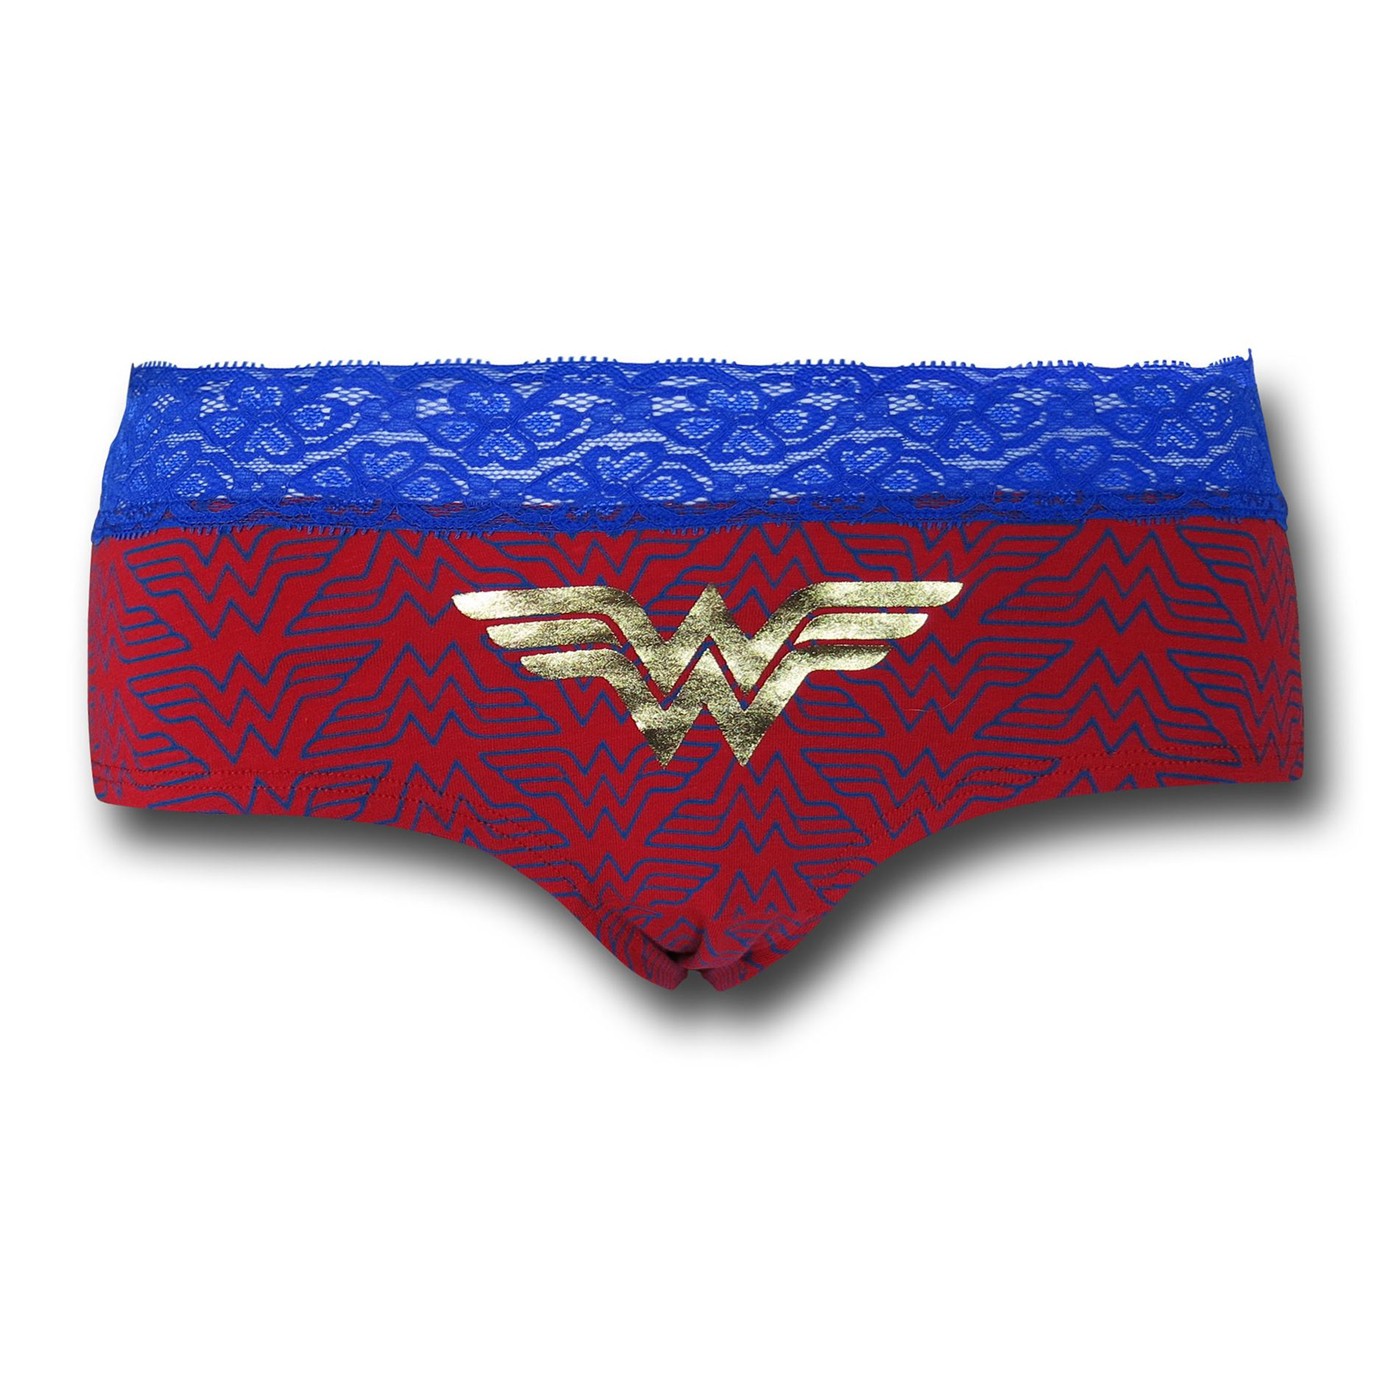 Wonder Woman Lace/Foil Women's Panty